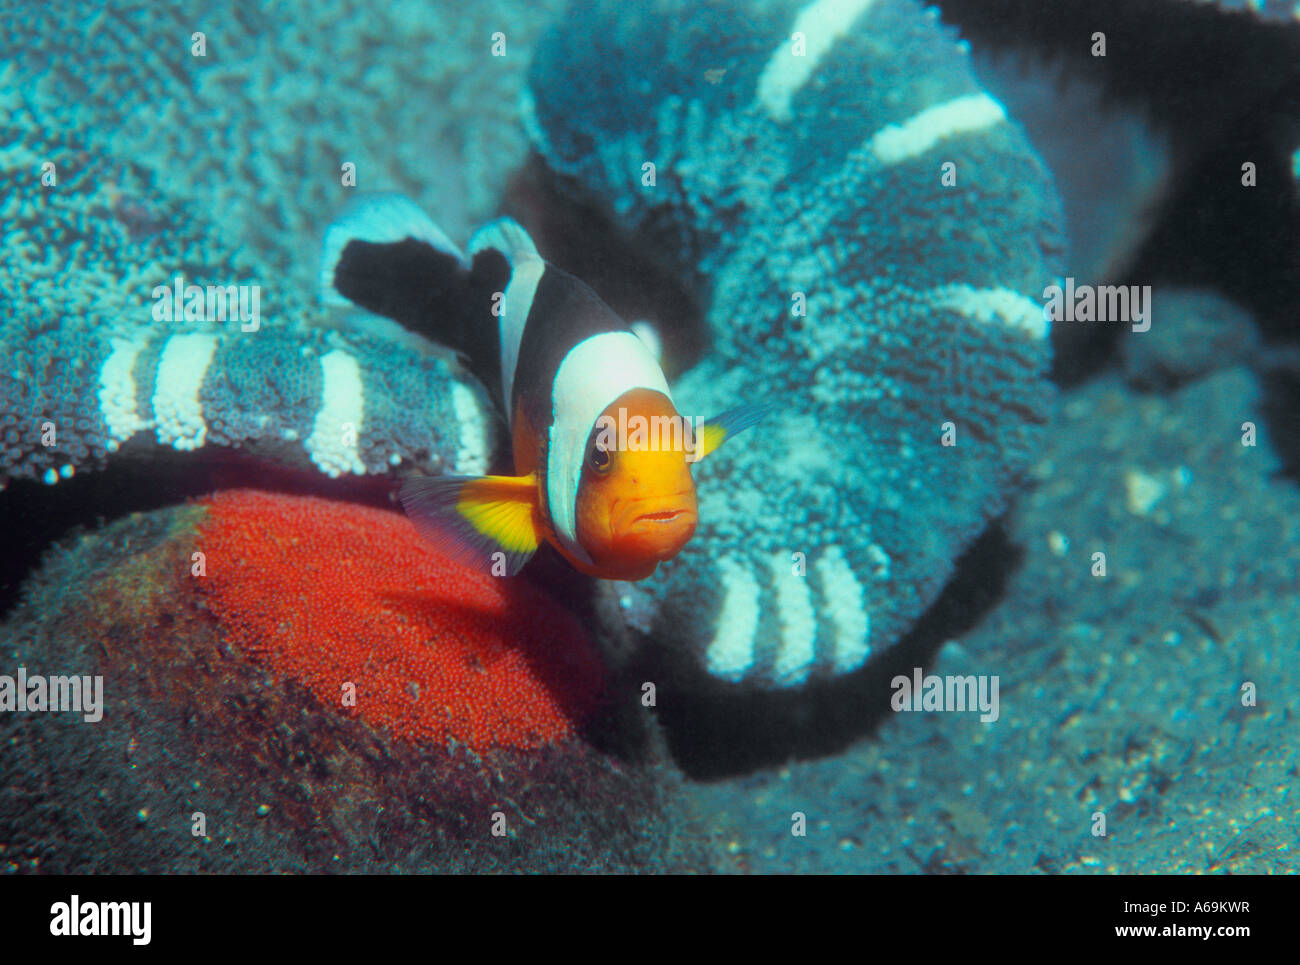 A doppio spiovente anemonefish custodendo freshy uova deposte su roccia Foto Stock